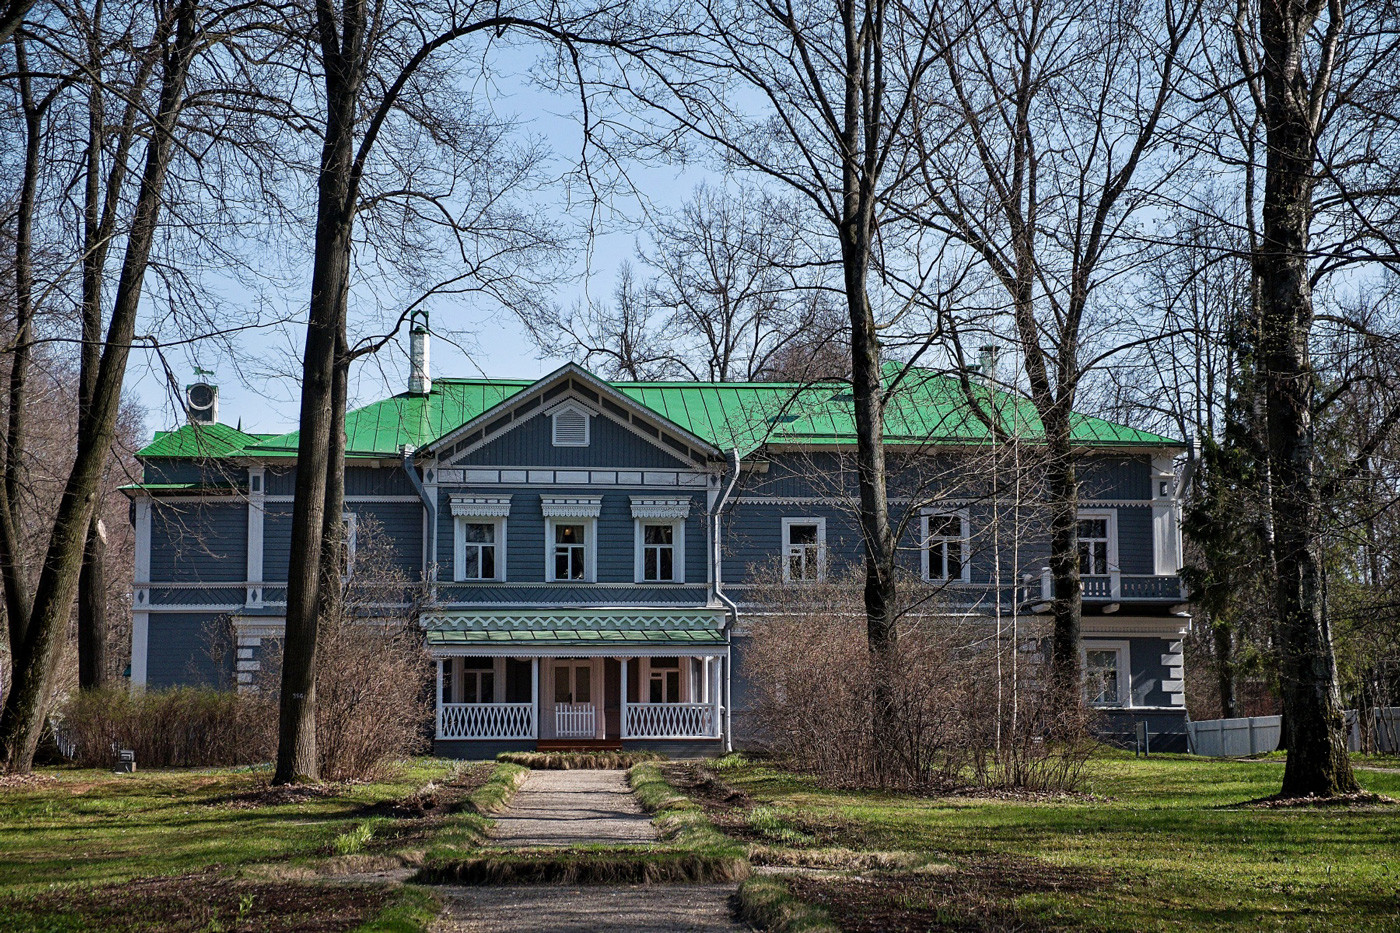 Kuća-muzej P. Čajkovskog, Klin, Rusija

